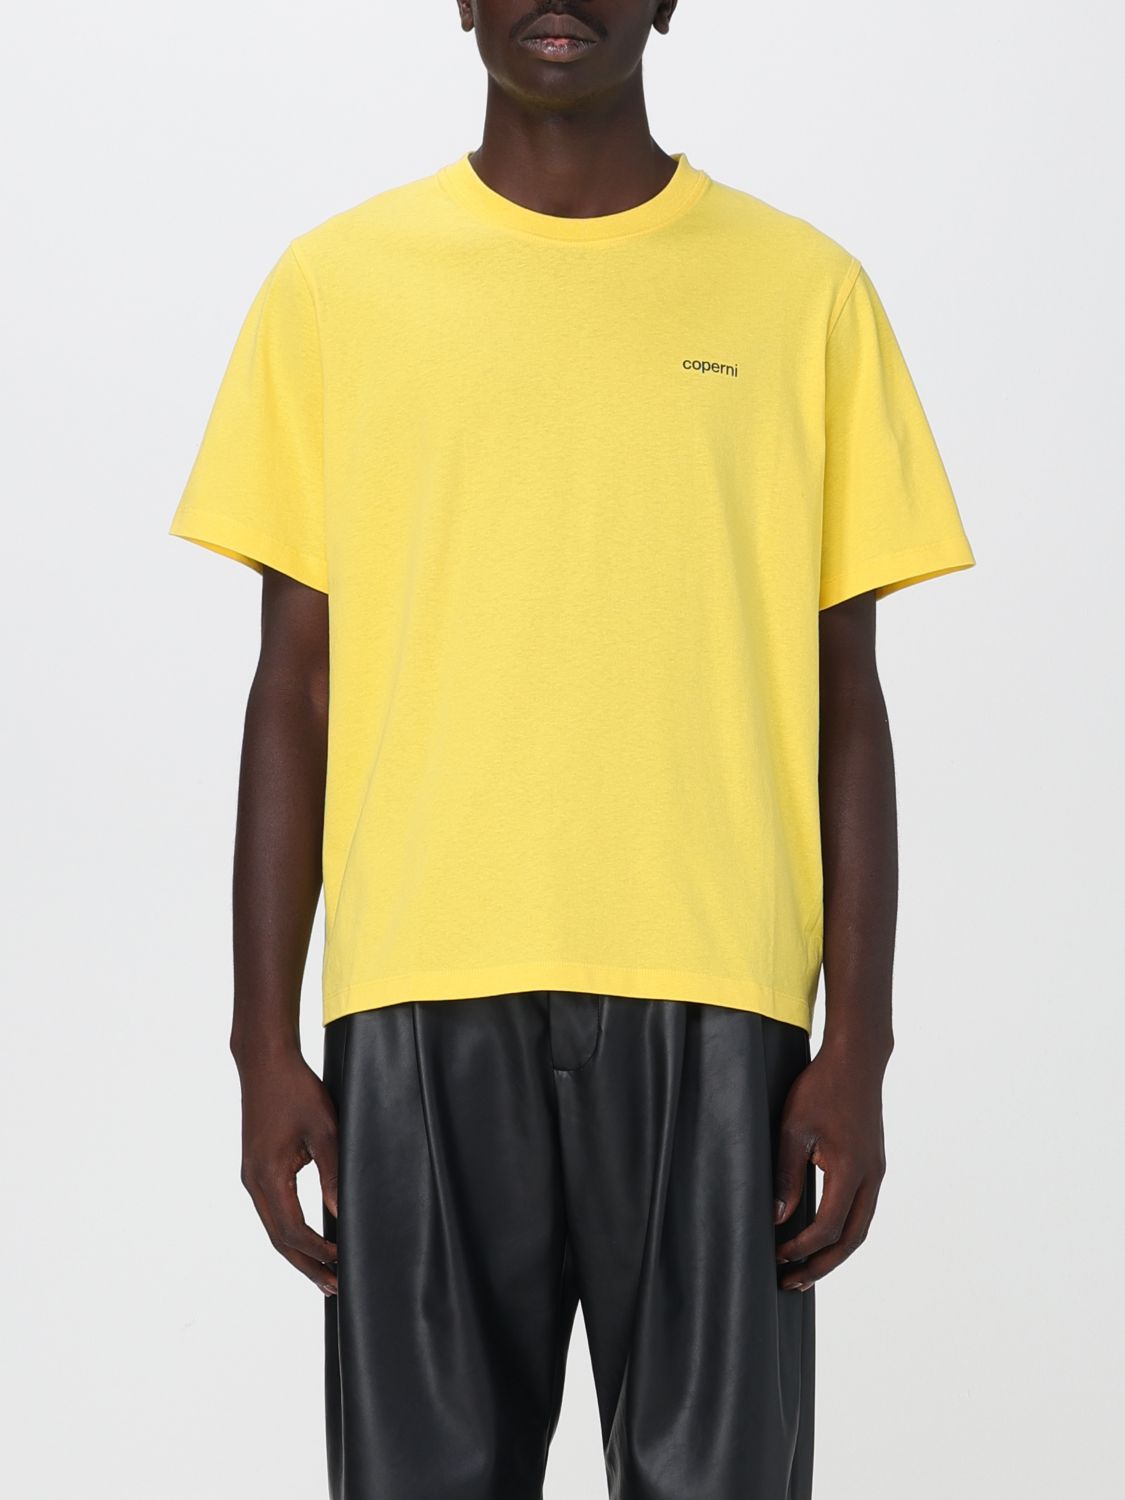 Coperni T-Shirt COPERNI Men colour Yellow